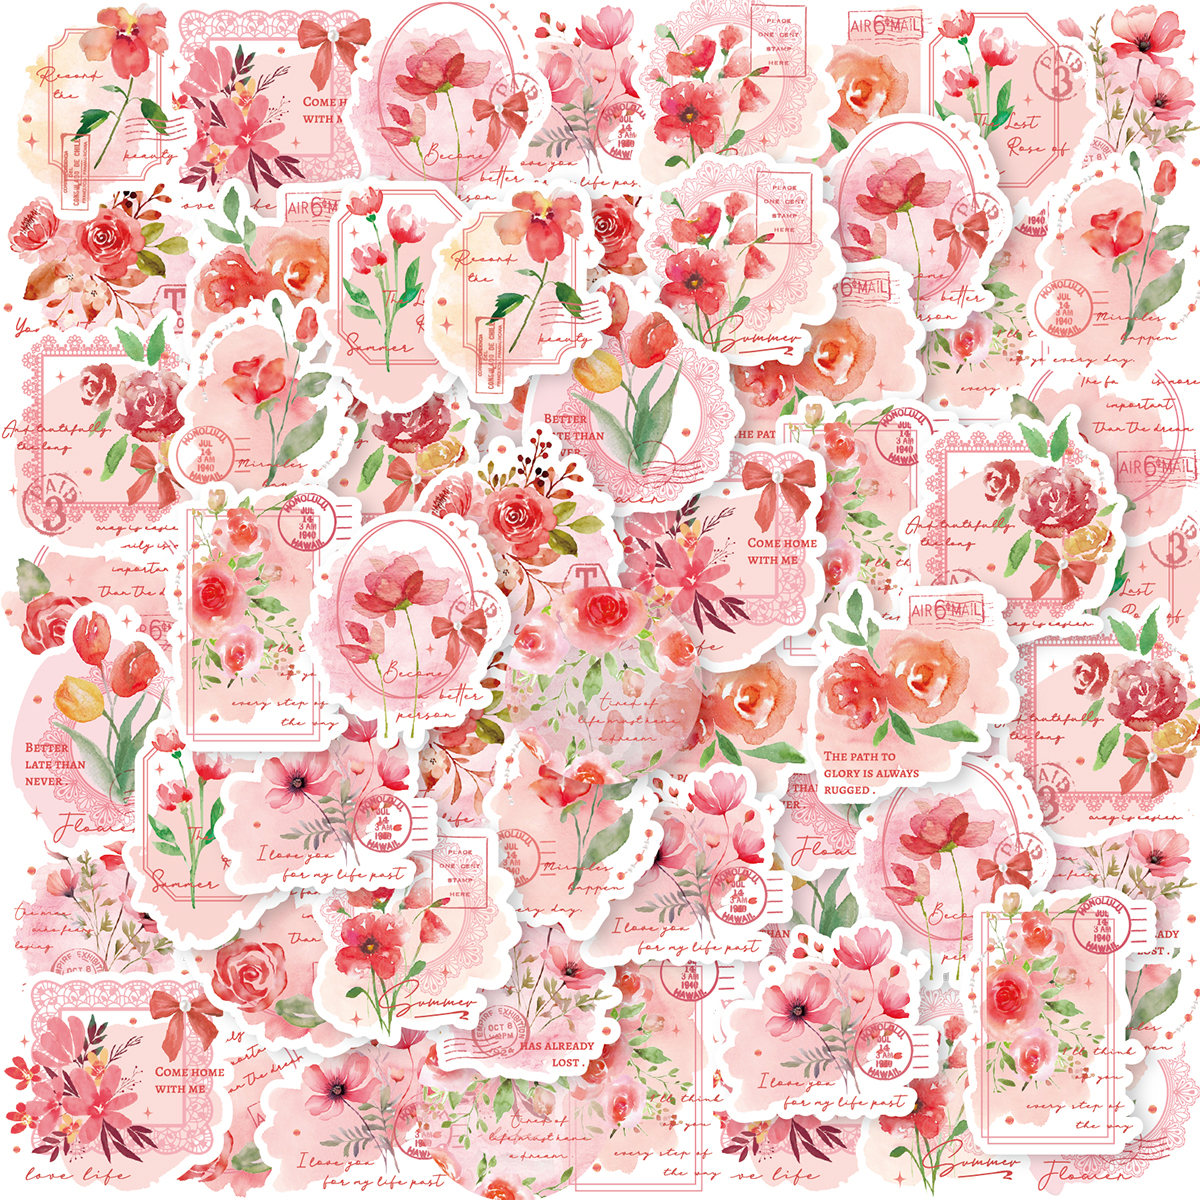 30 件裝可愛復古植物花卉粉紅玫瑰 PVC 貼紙袋硫酸紙信封學生 DIY 文具裝飾貼紙適用於日記、杯子、筆記本電腦、剪貼